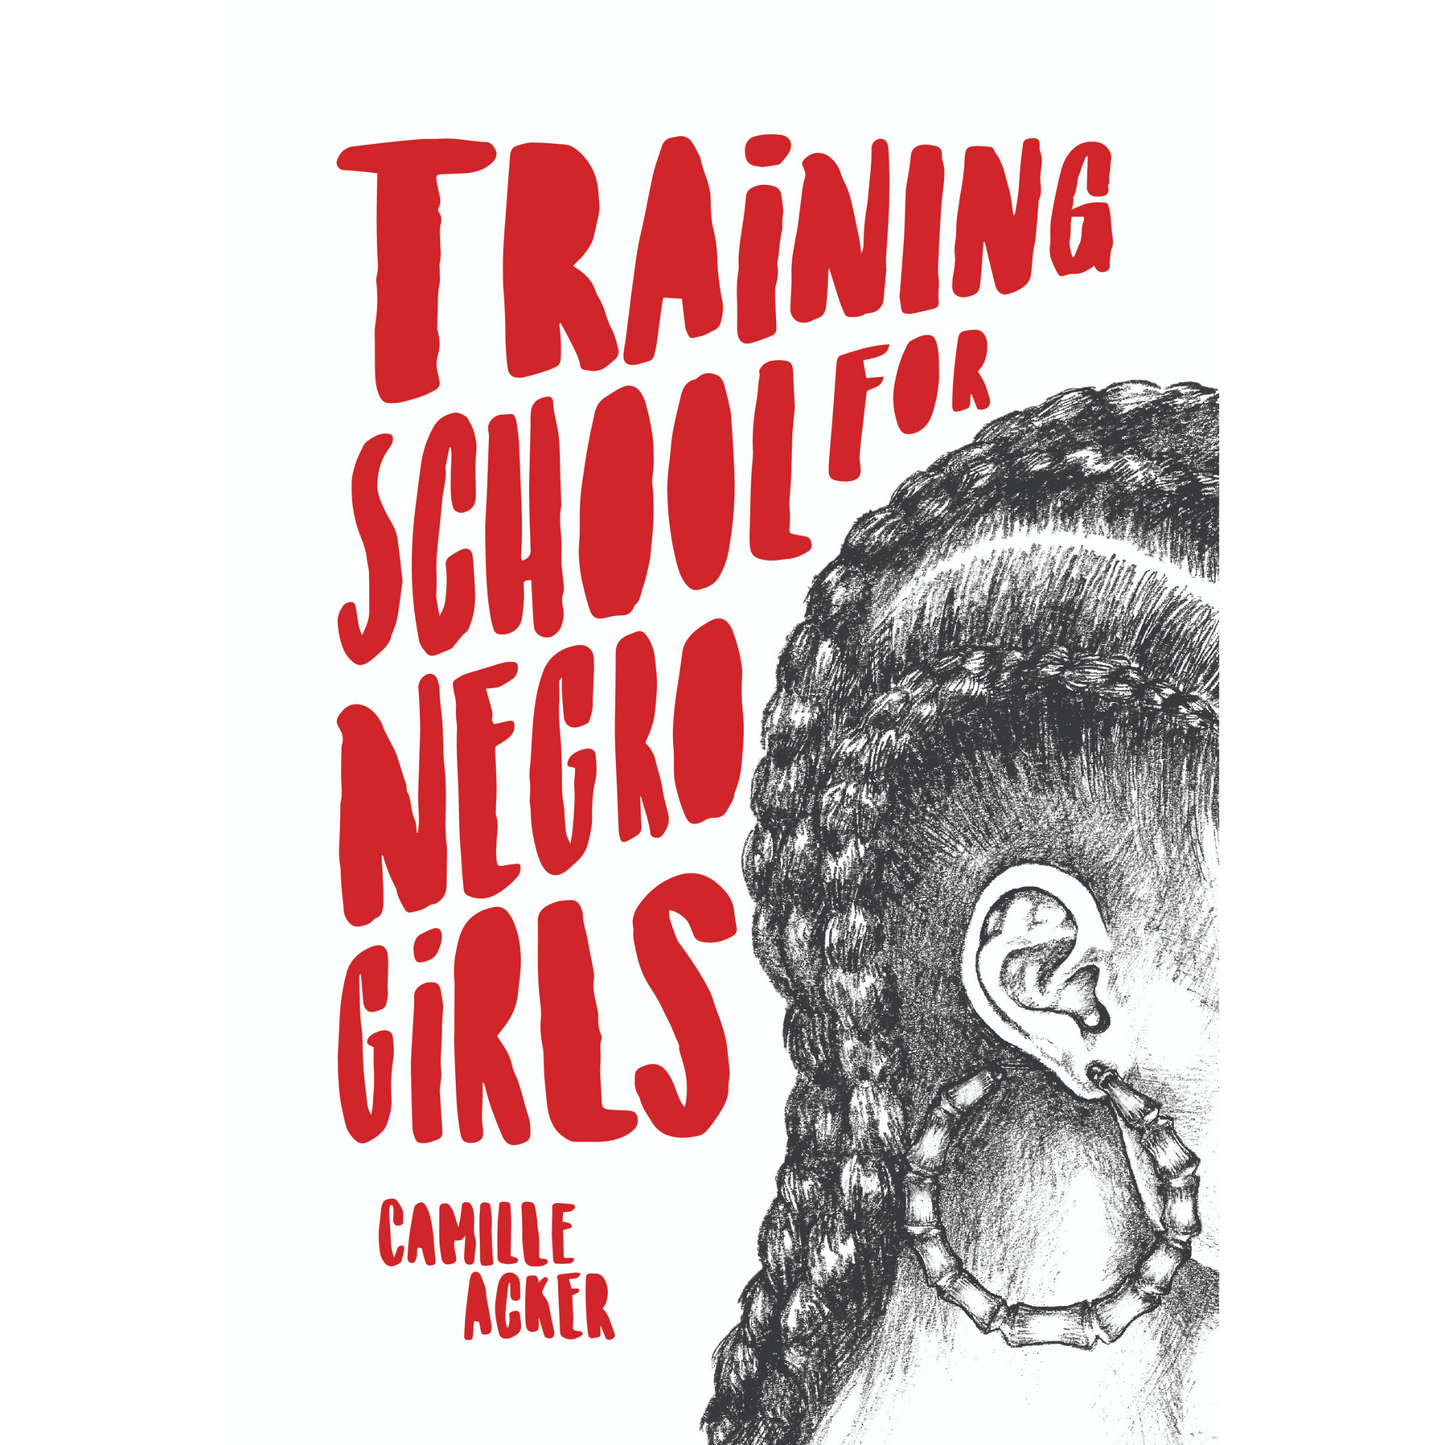 training school for negro girls camille acker